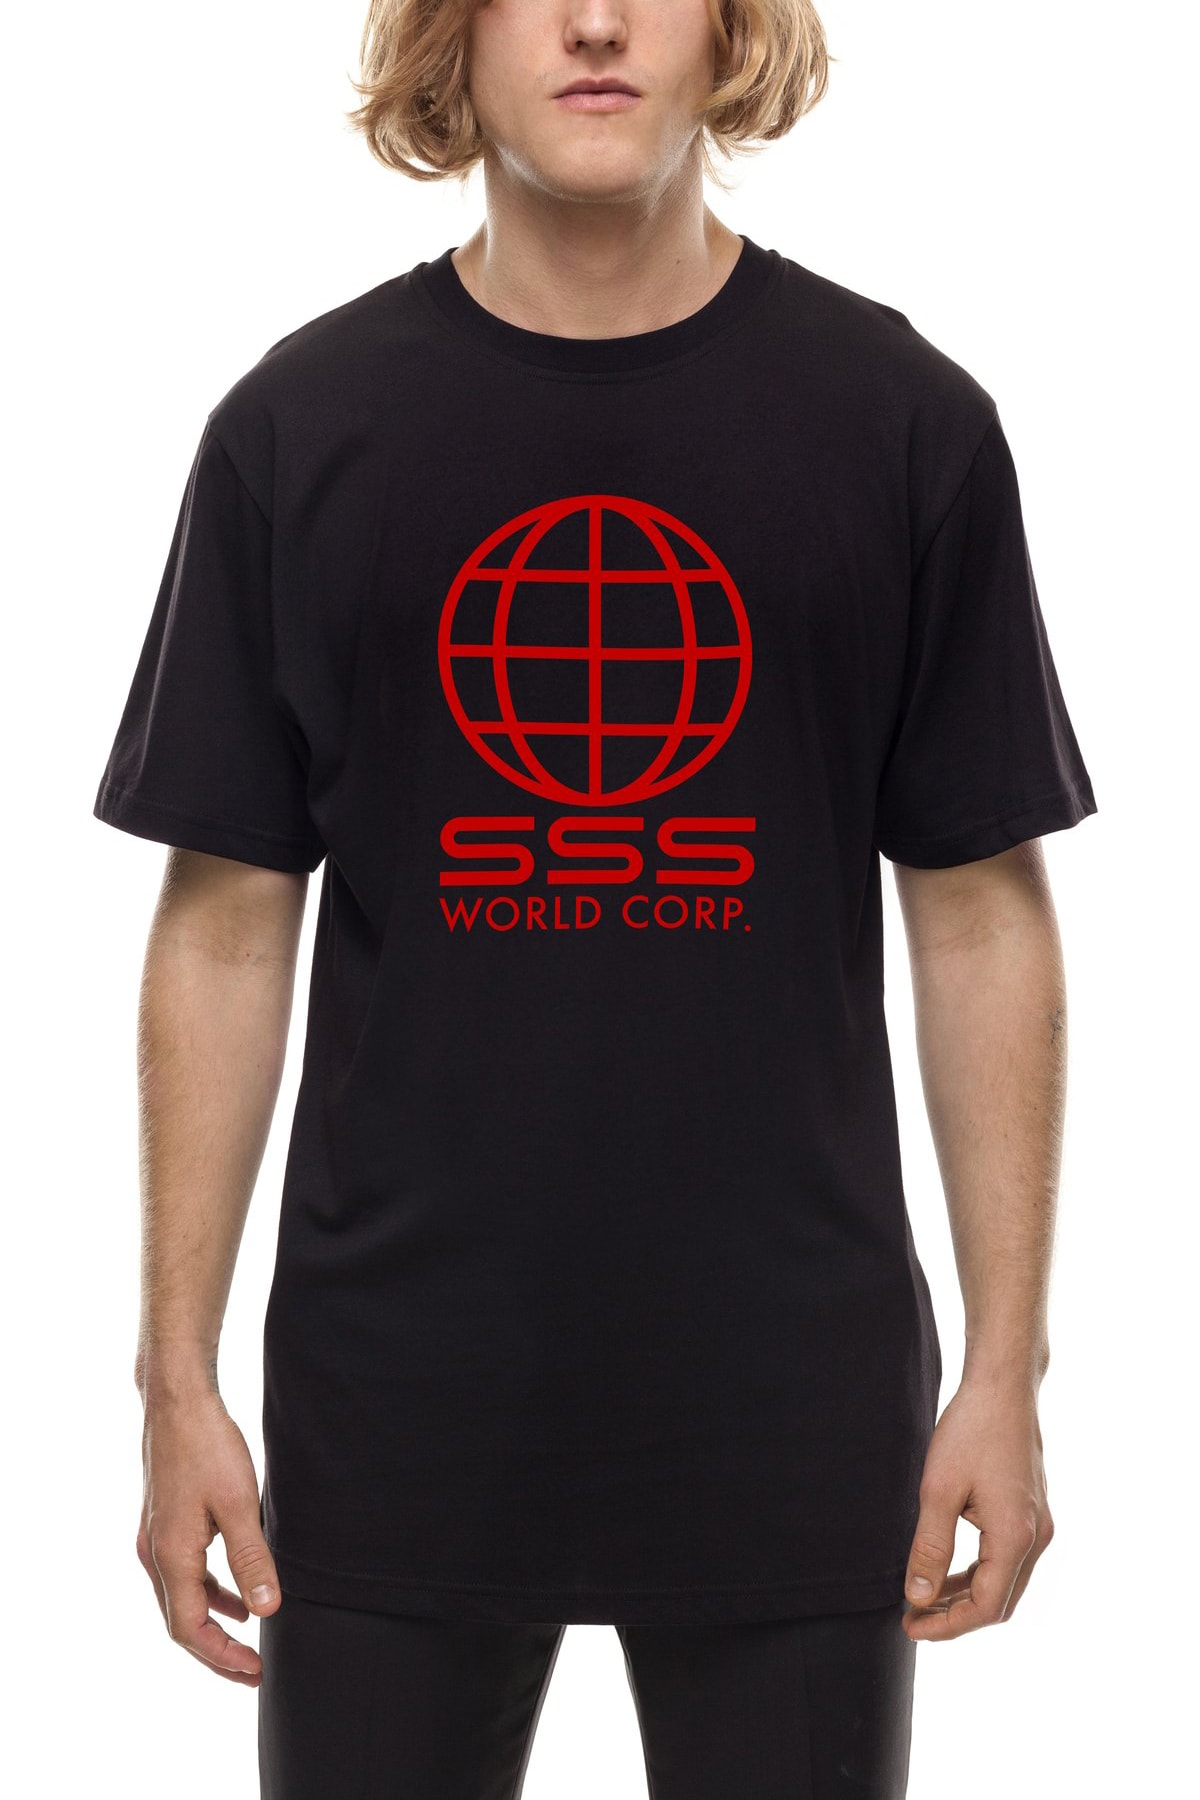 時裝週街拍常客自家創立品牌 SSS World Corp 登陸 032c